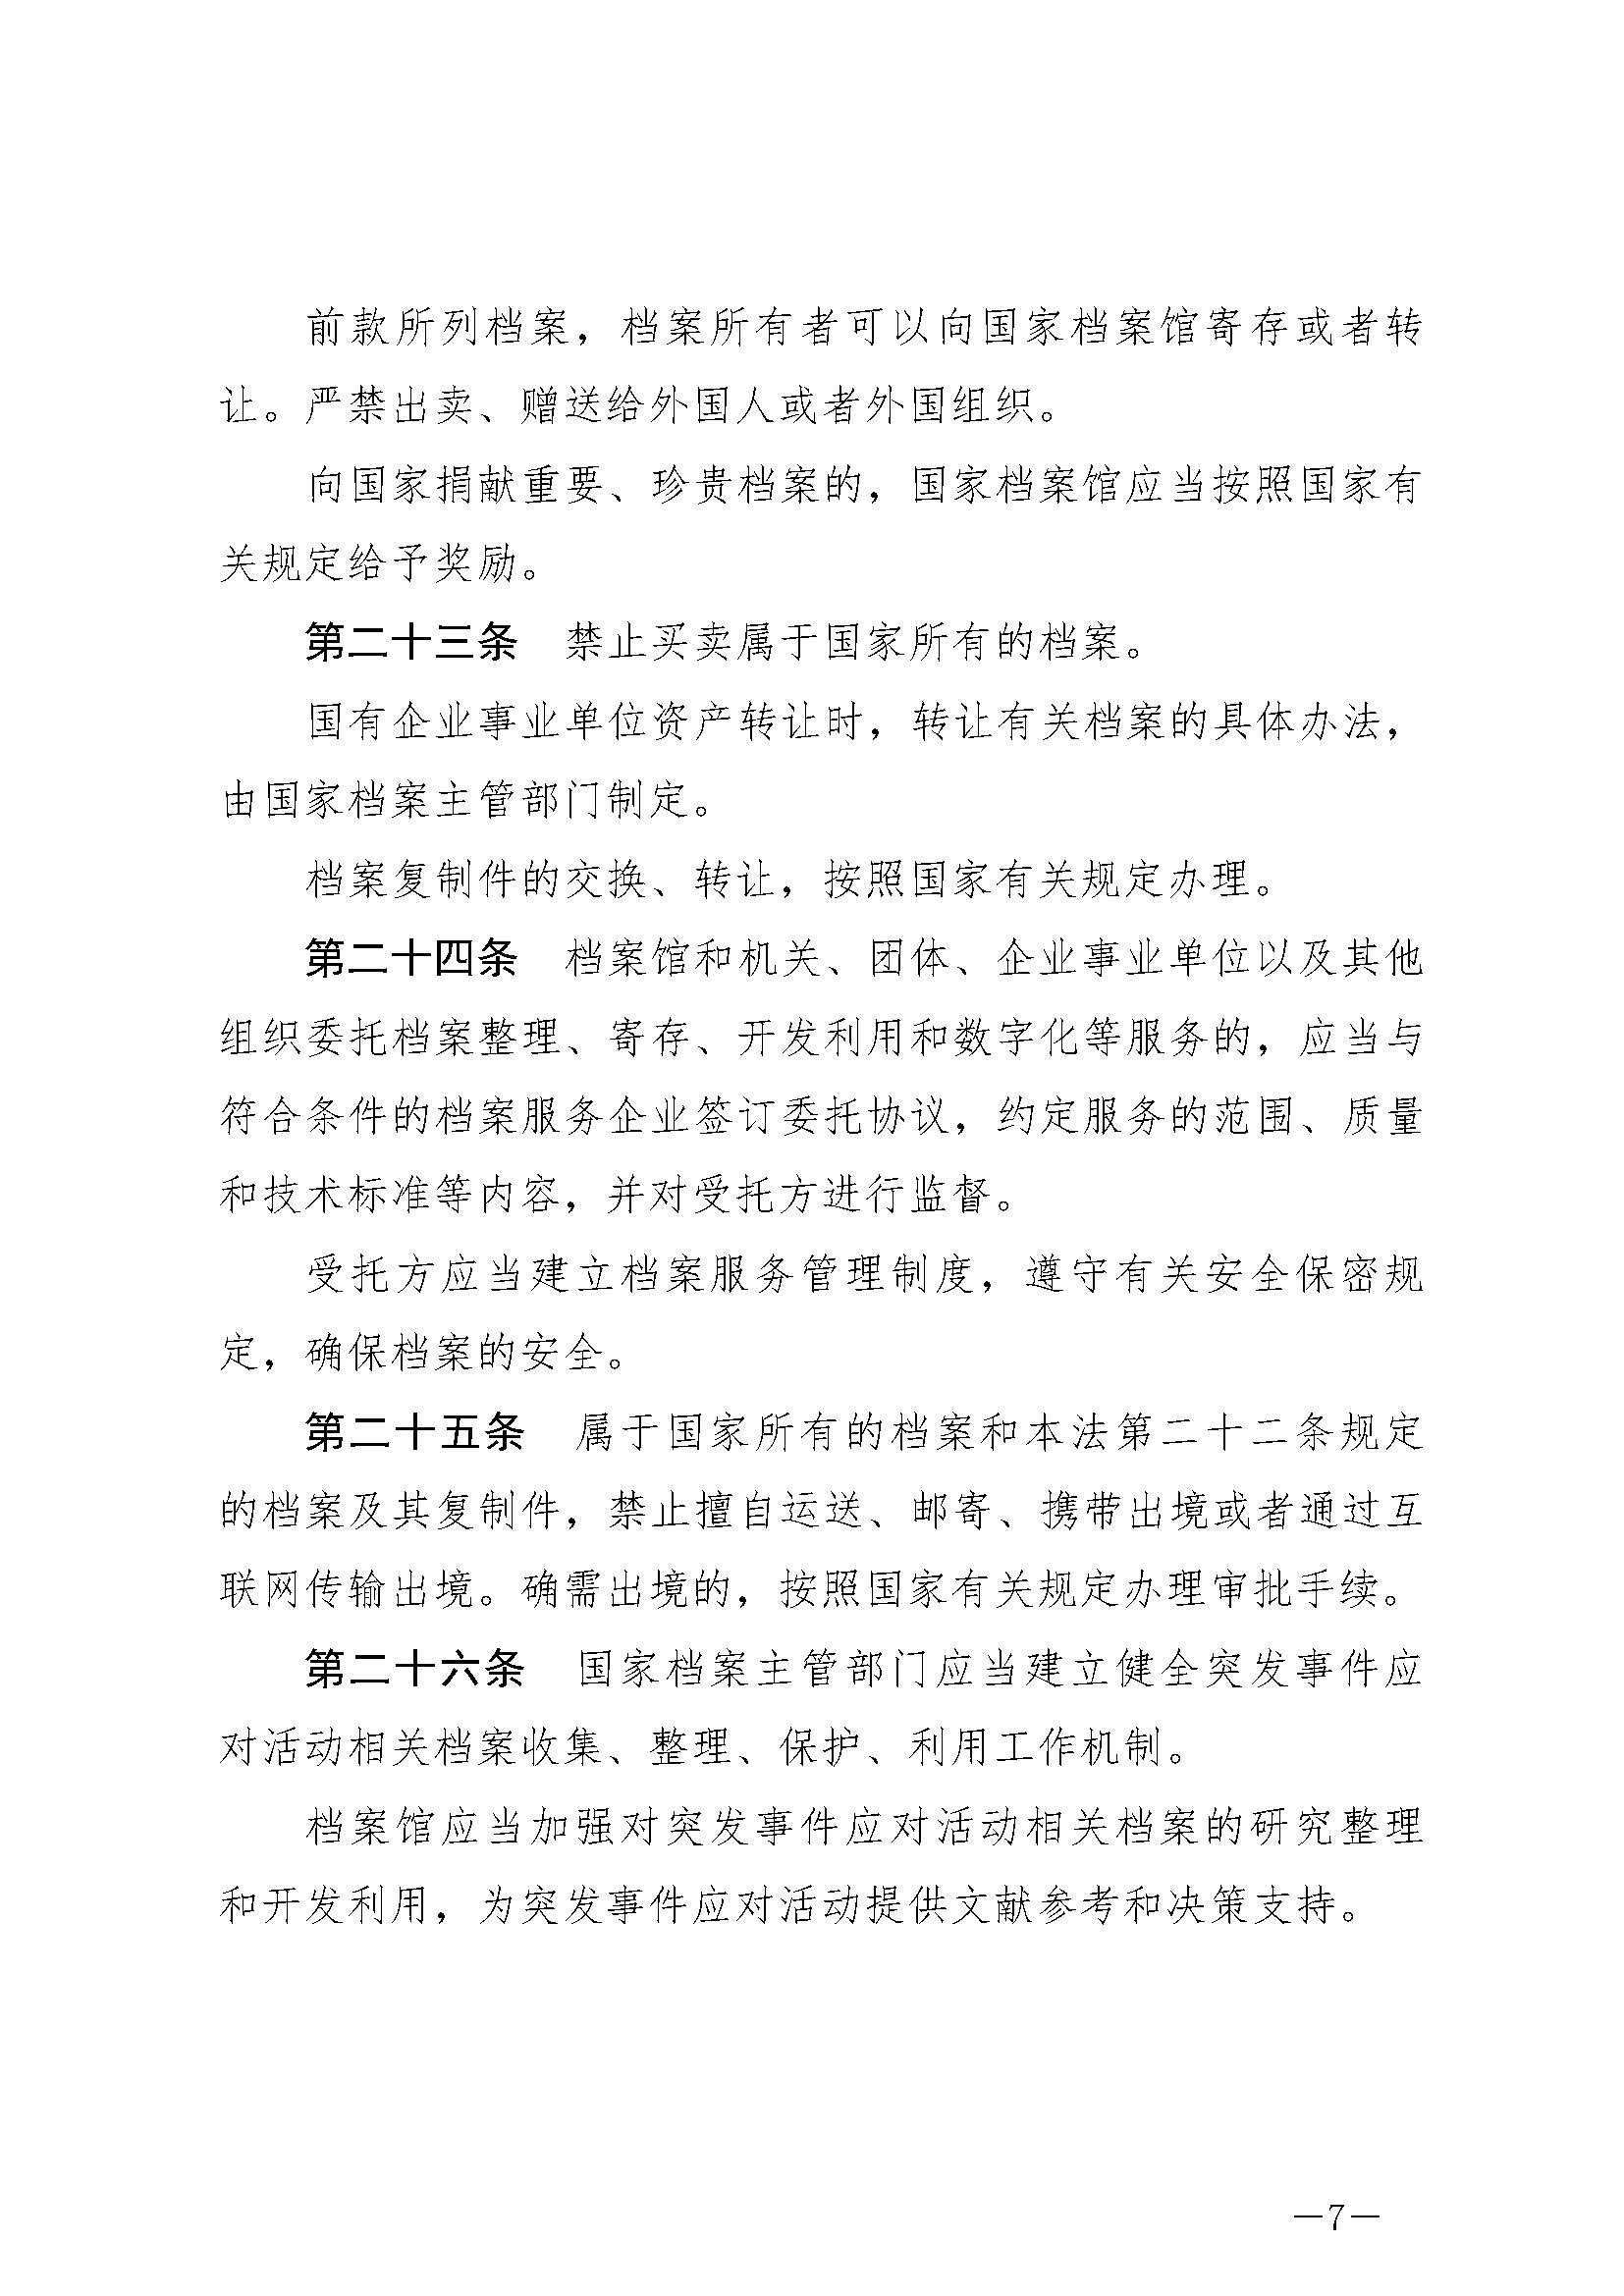 《中华人民共和国档案法》_页面_07.jpg